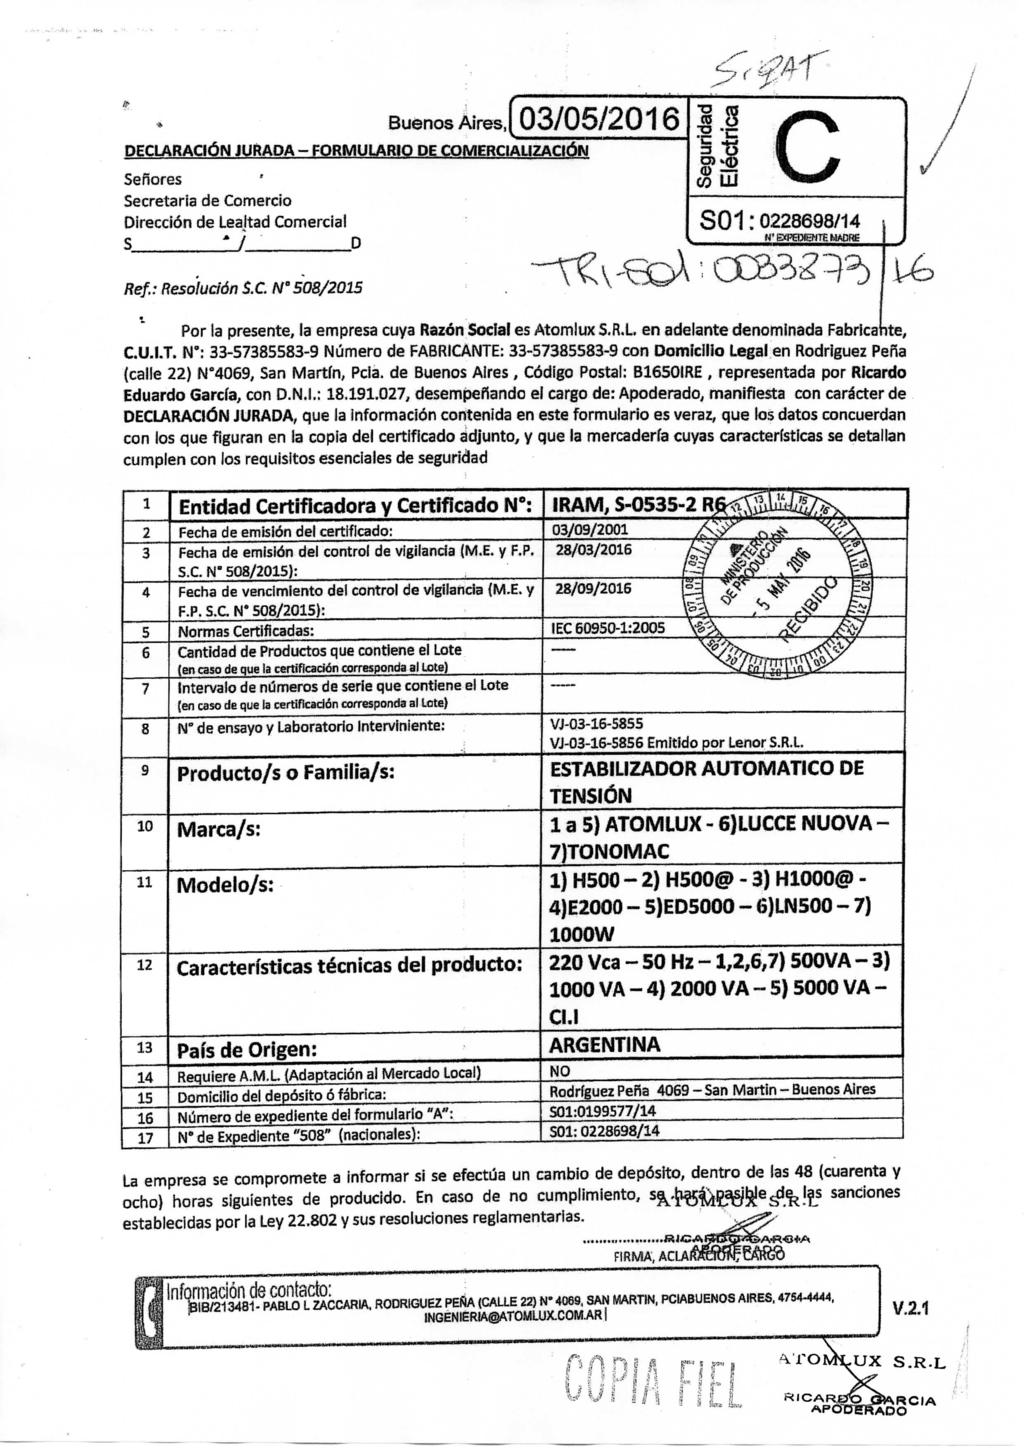 Buenos Aires, DECLARAaÓN JUftAPA - FORMULARIO DE COMERCIALiZACIÓW Señores Secretaria de Comercio Dirección de Lealtad Comercial S 1 / D 03/05/2016 I c S01:0228698/14 Ref.: Resolución S.C. N 508/2015 Por la presente, la empresa cuya Razón Soclaf es Atomlux S.